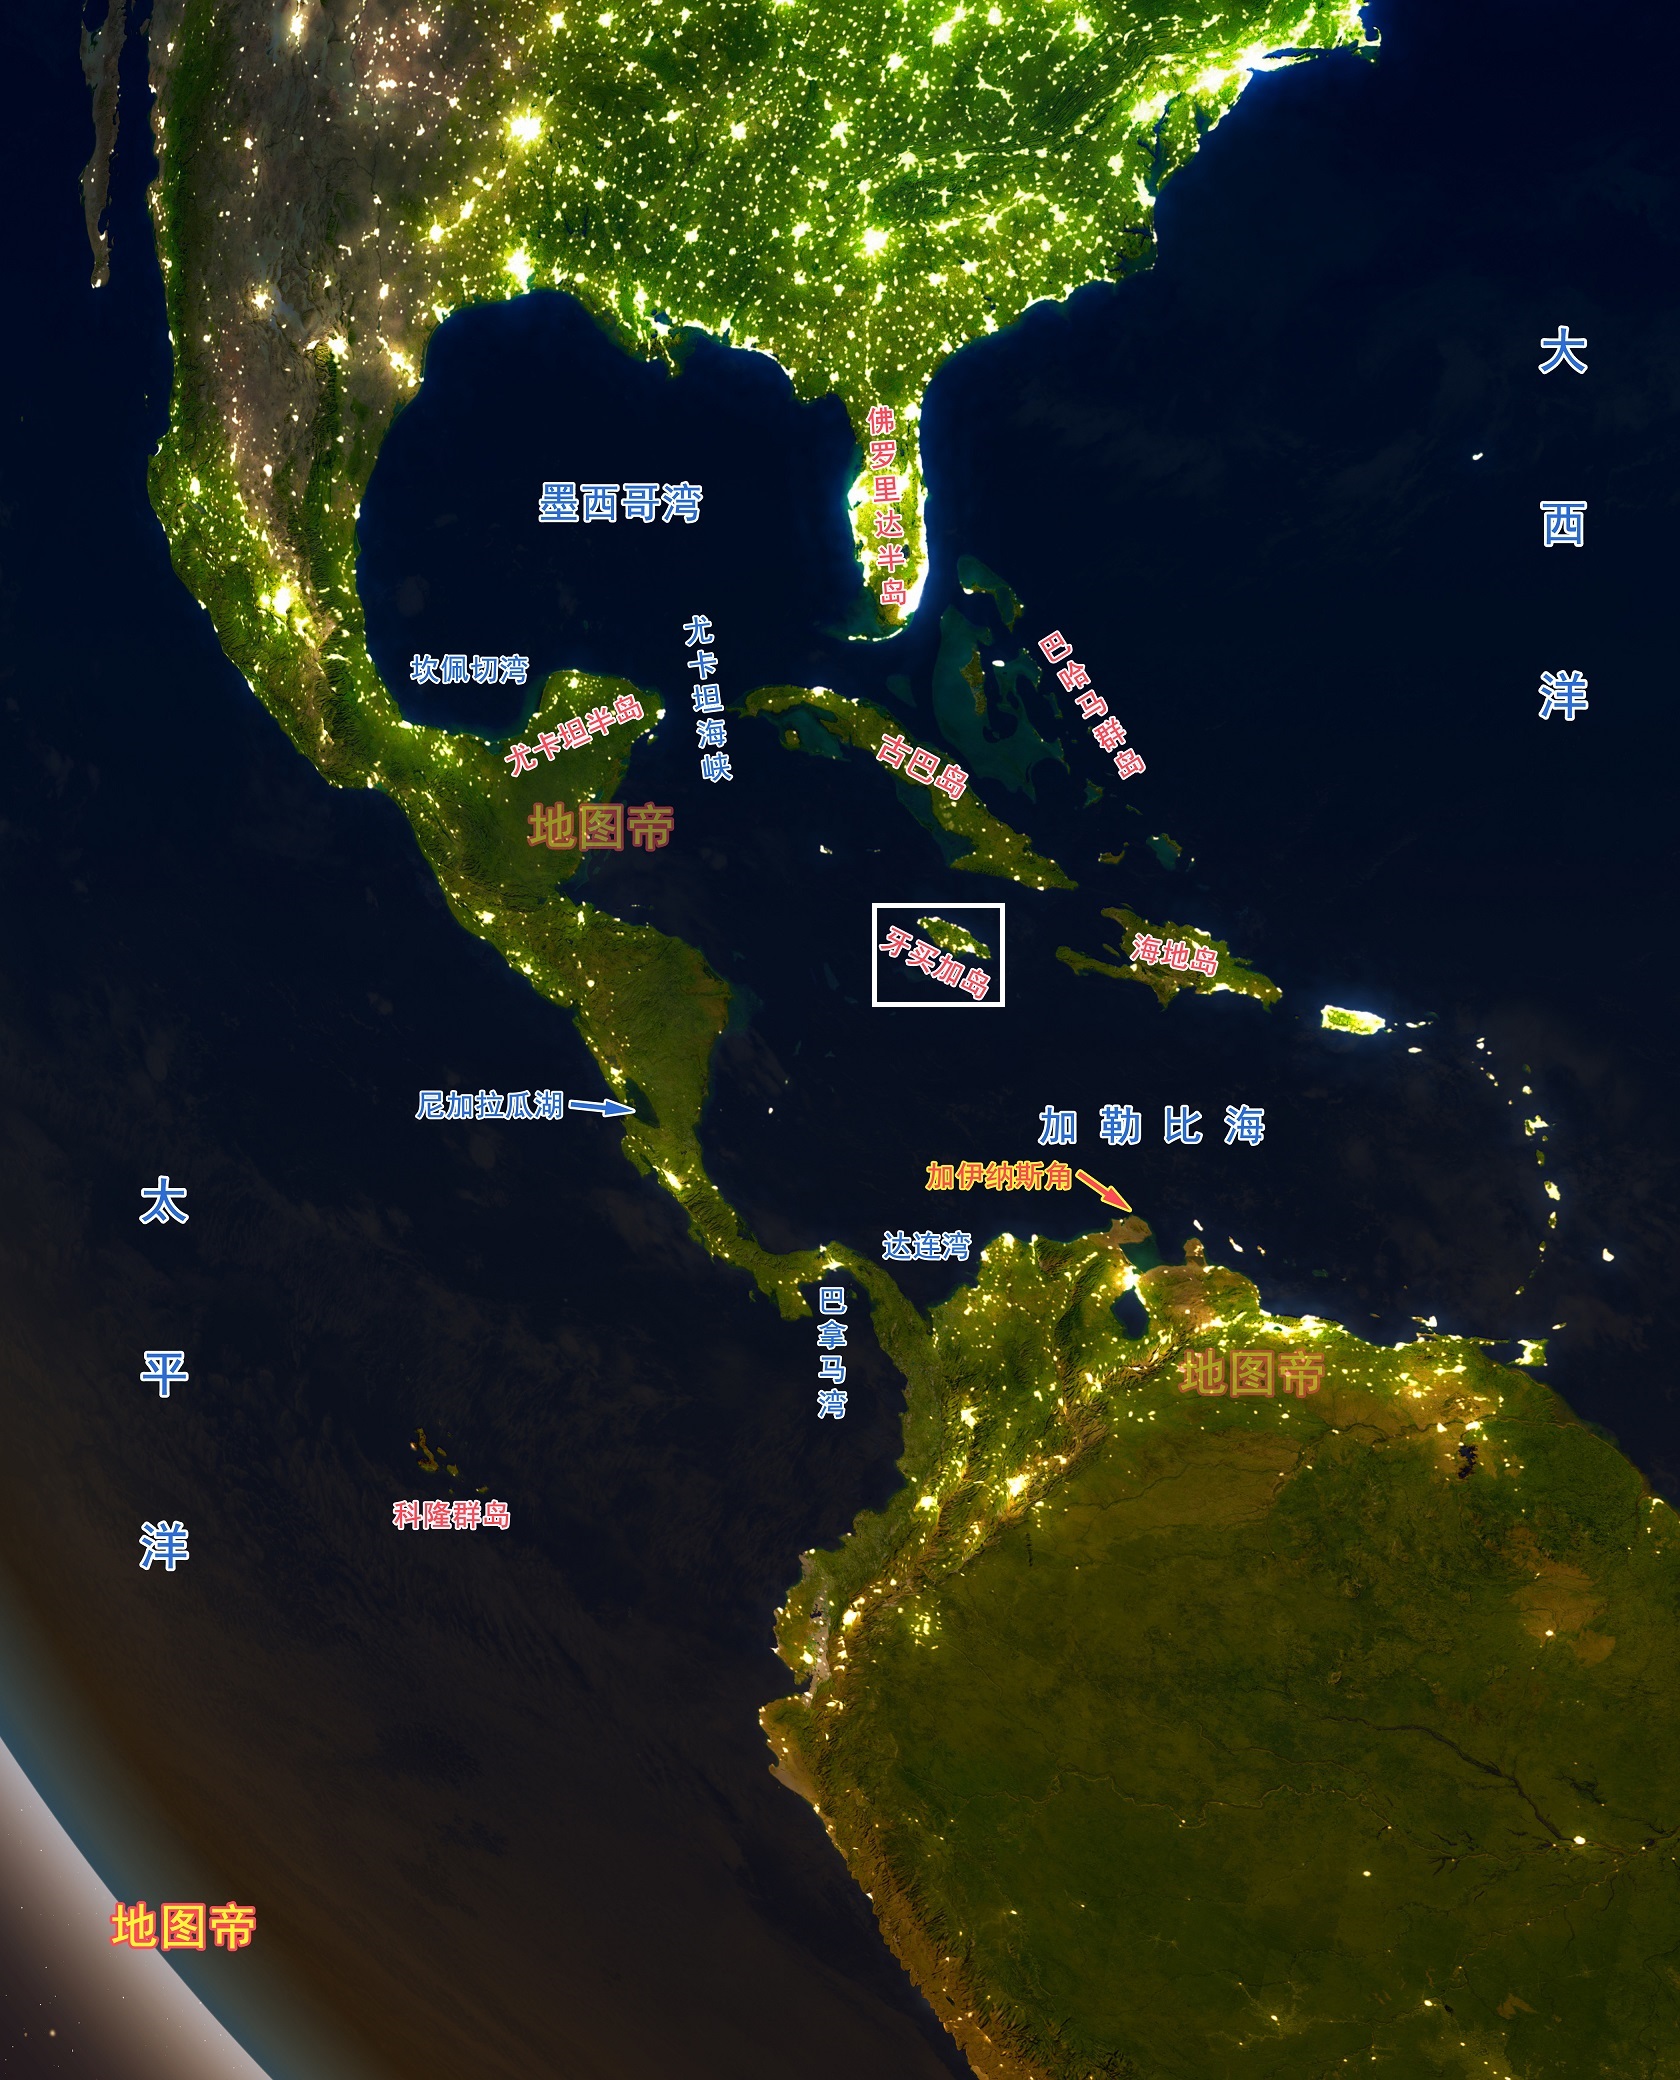 牙买加面积为10991平方公里,比我国的天津市略小一些